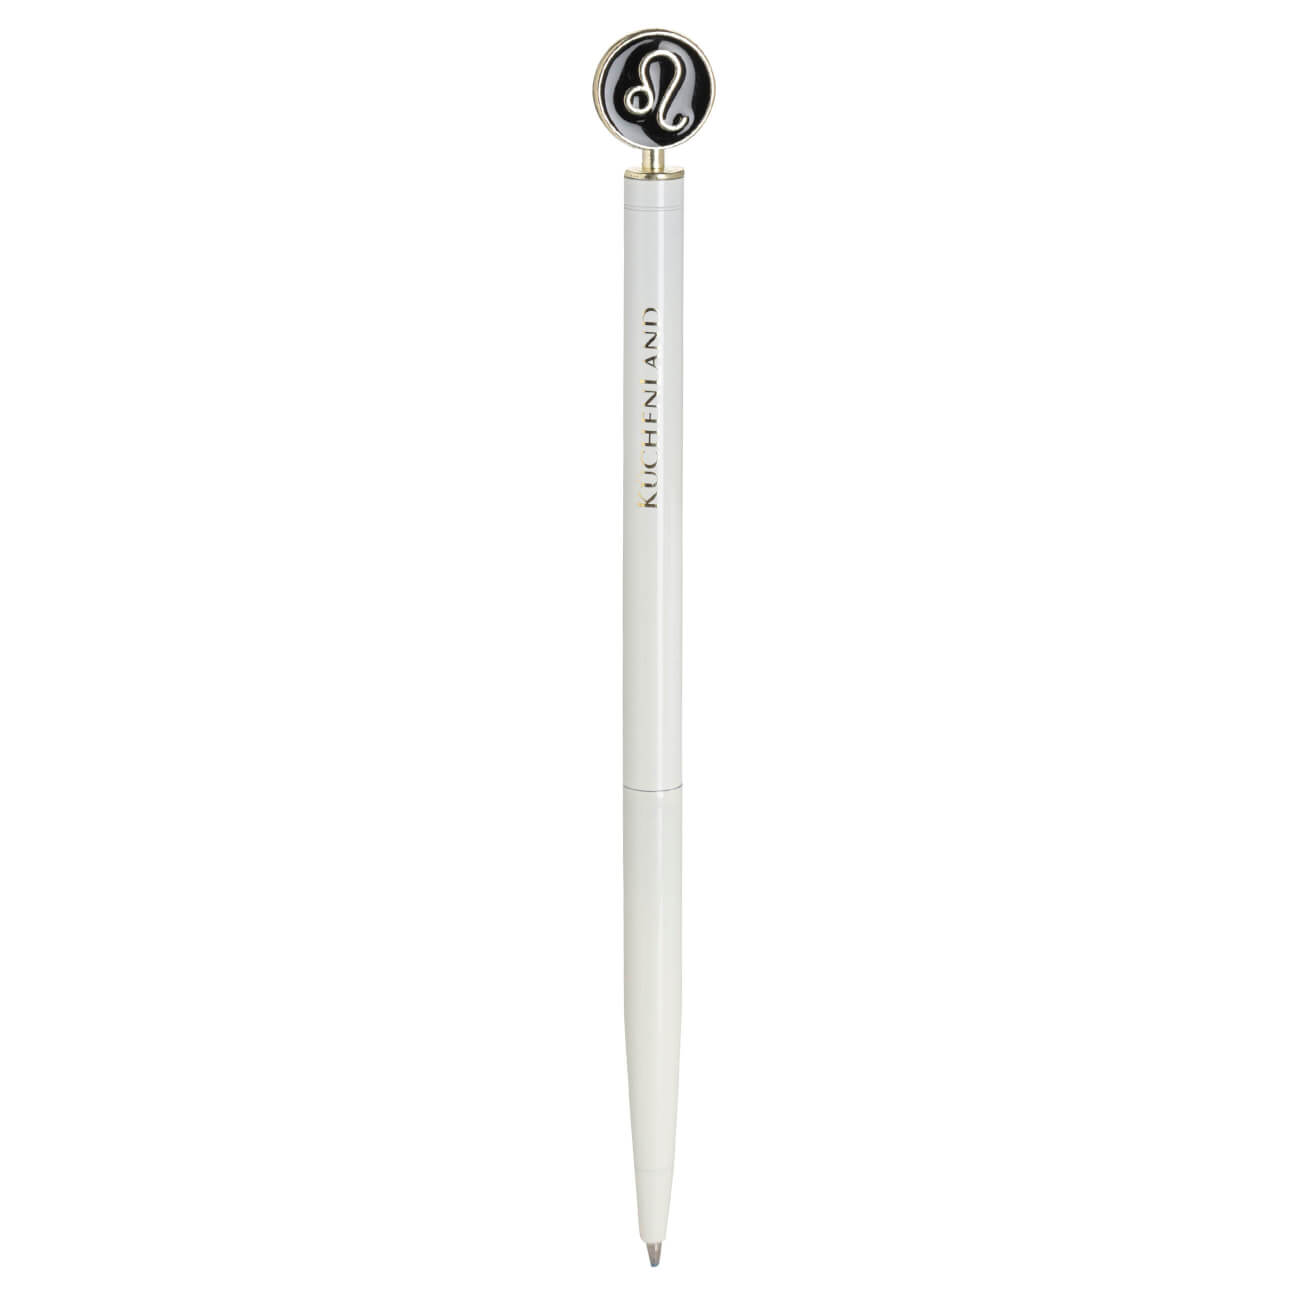 Ручка шариковая, 15 см, с фигуркой, сталь, молочно-золотистая, Лев, Zodiac ручка подарочная шариковая в пластиковом футляре поворотная